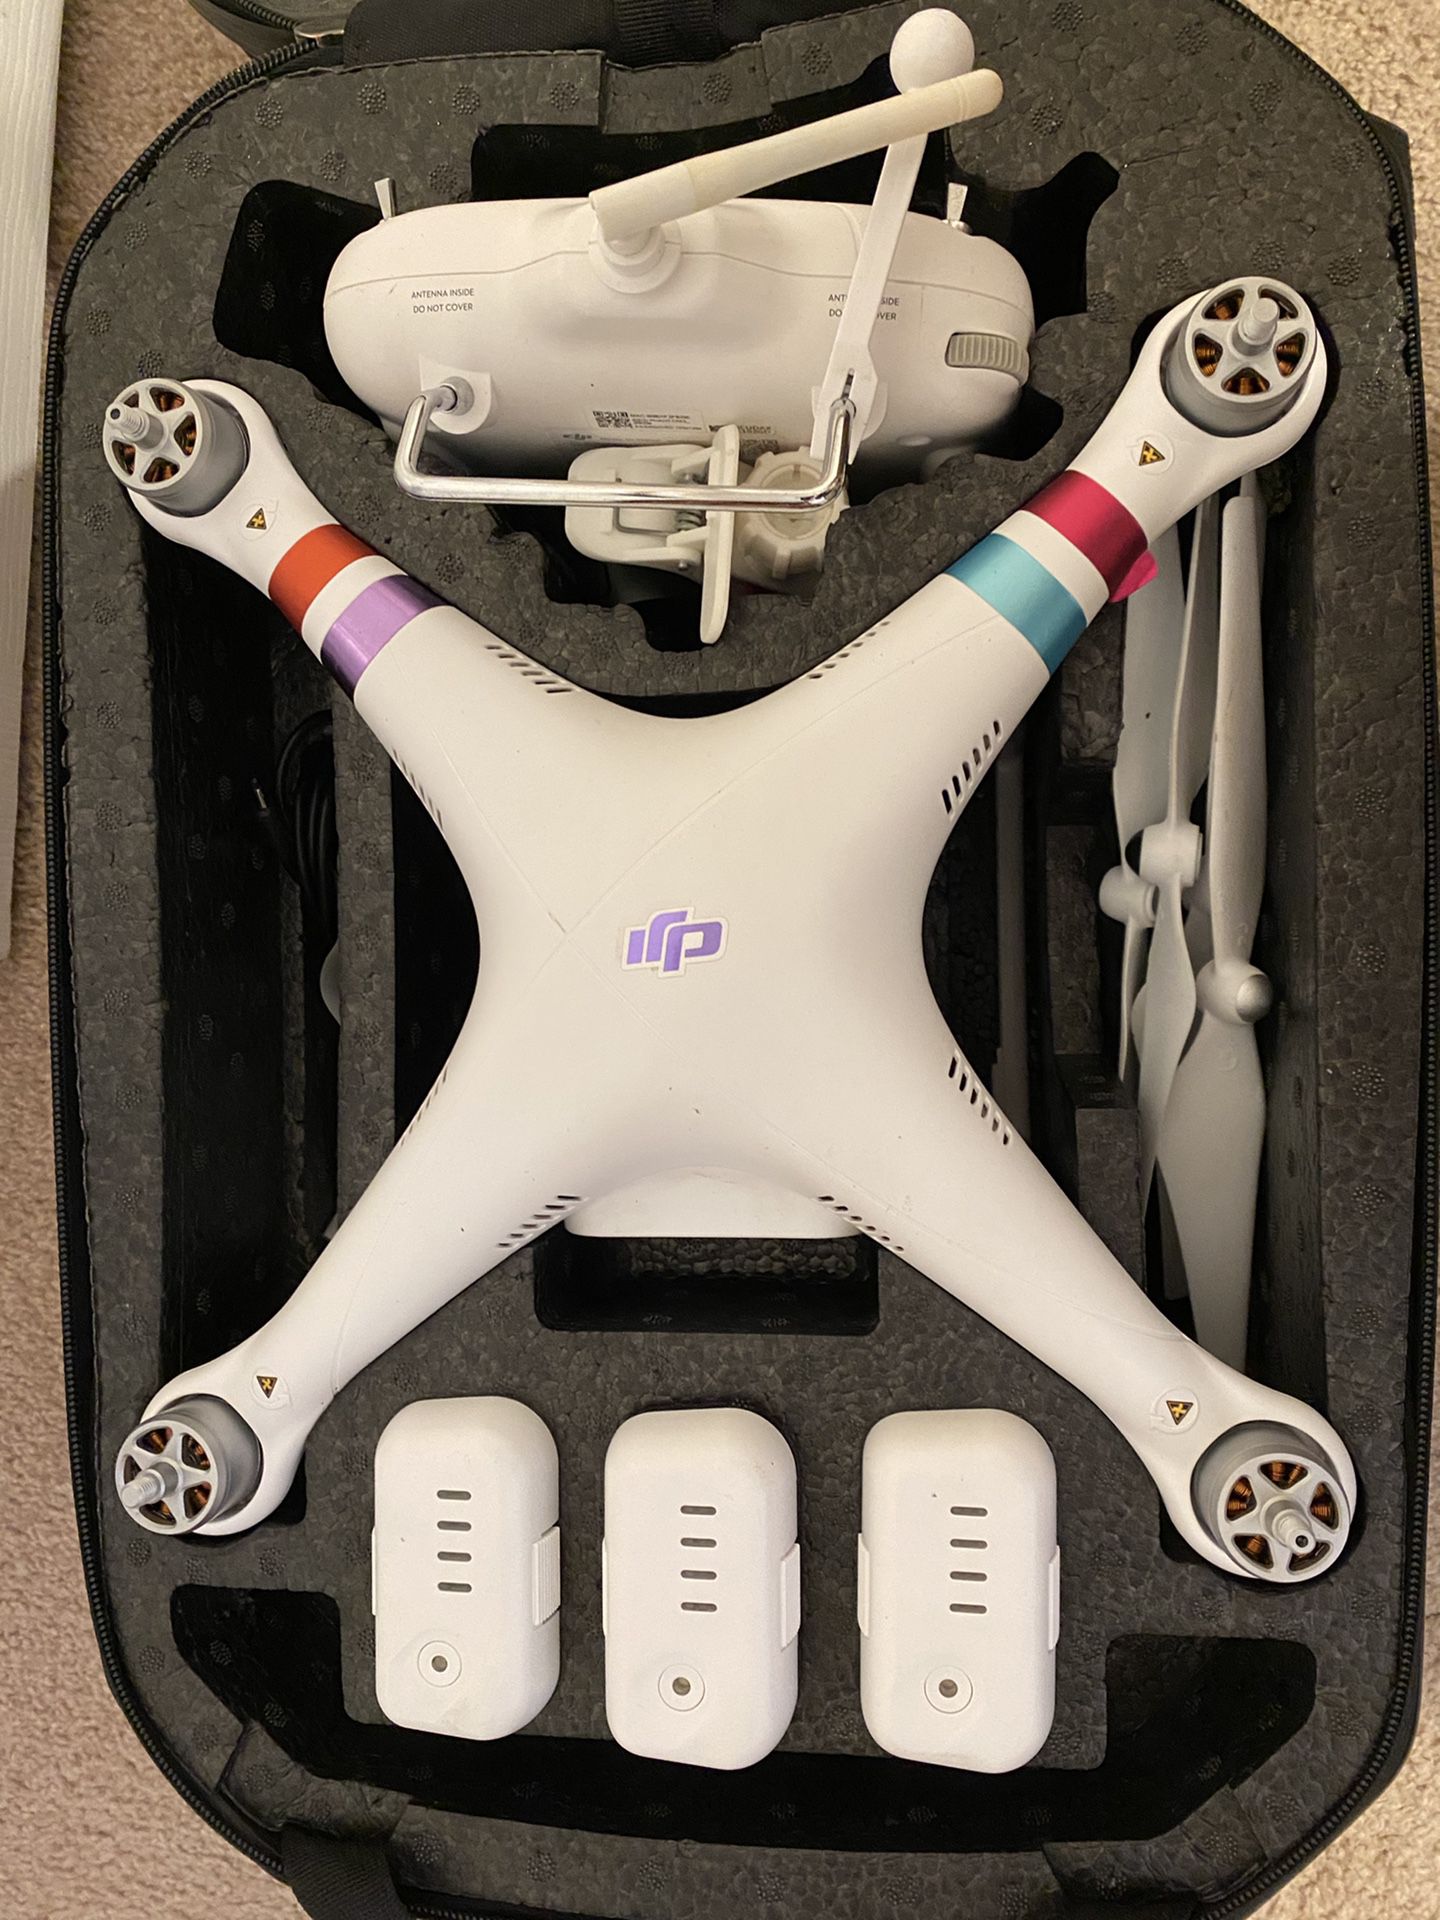 DJI Phantom 3 Standard drone